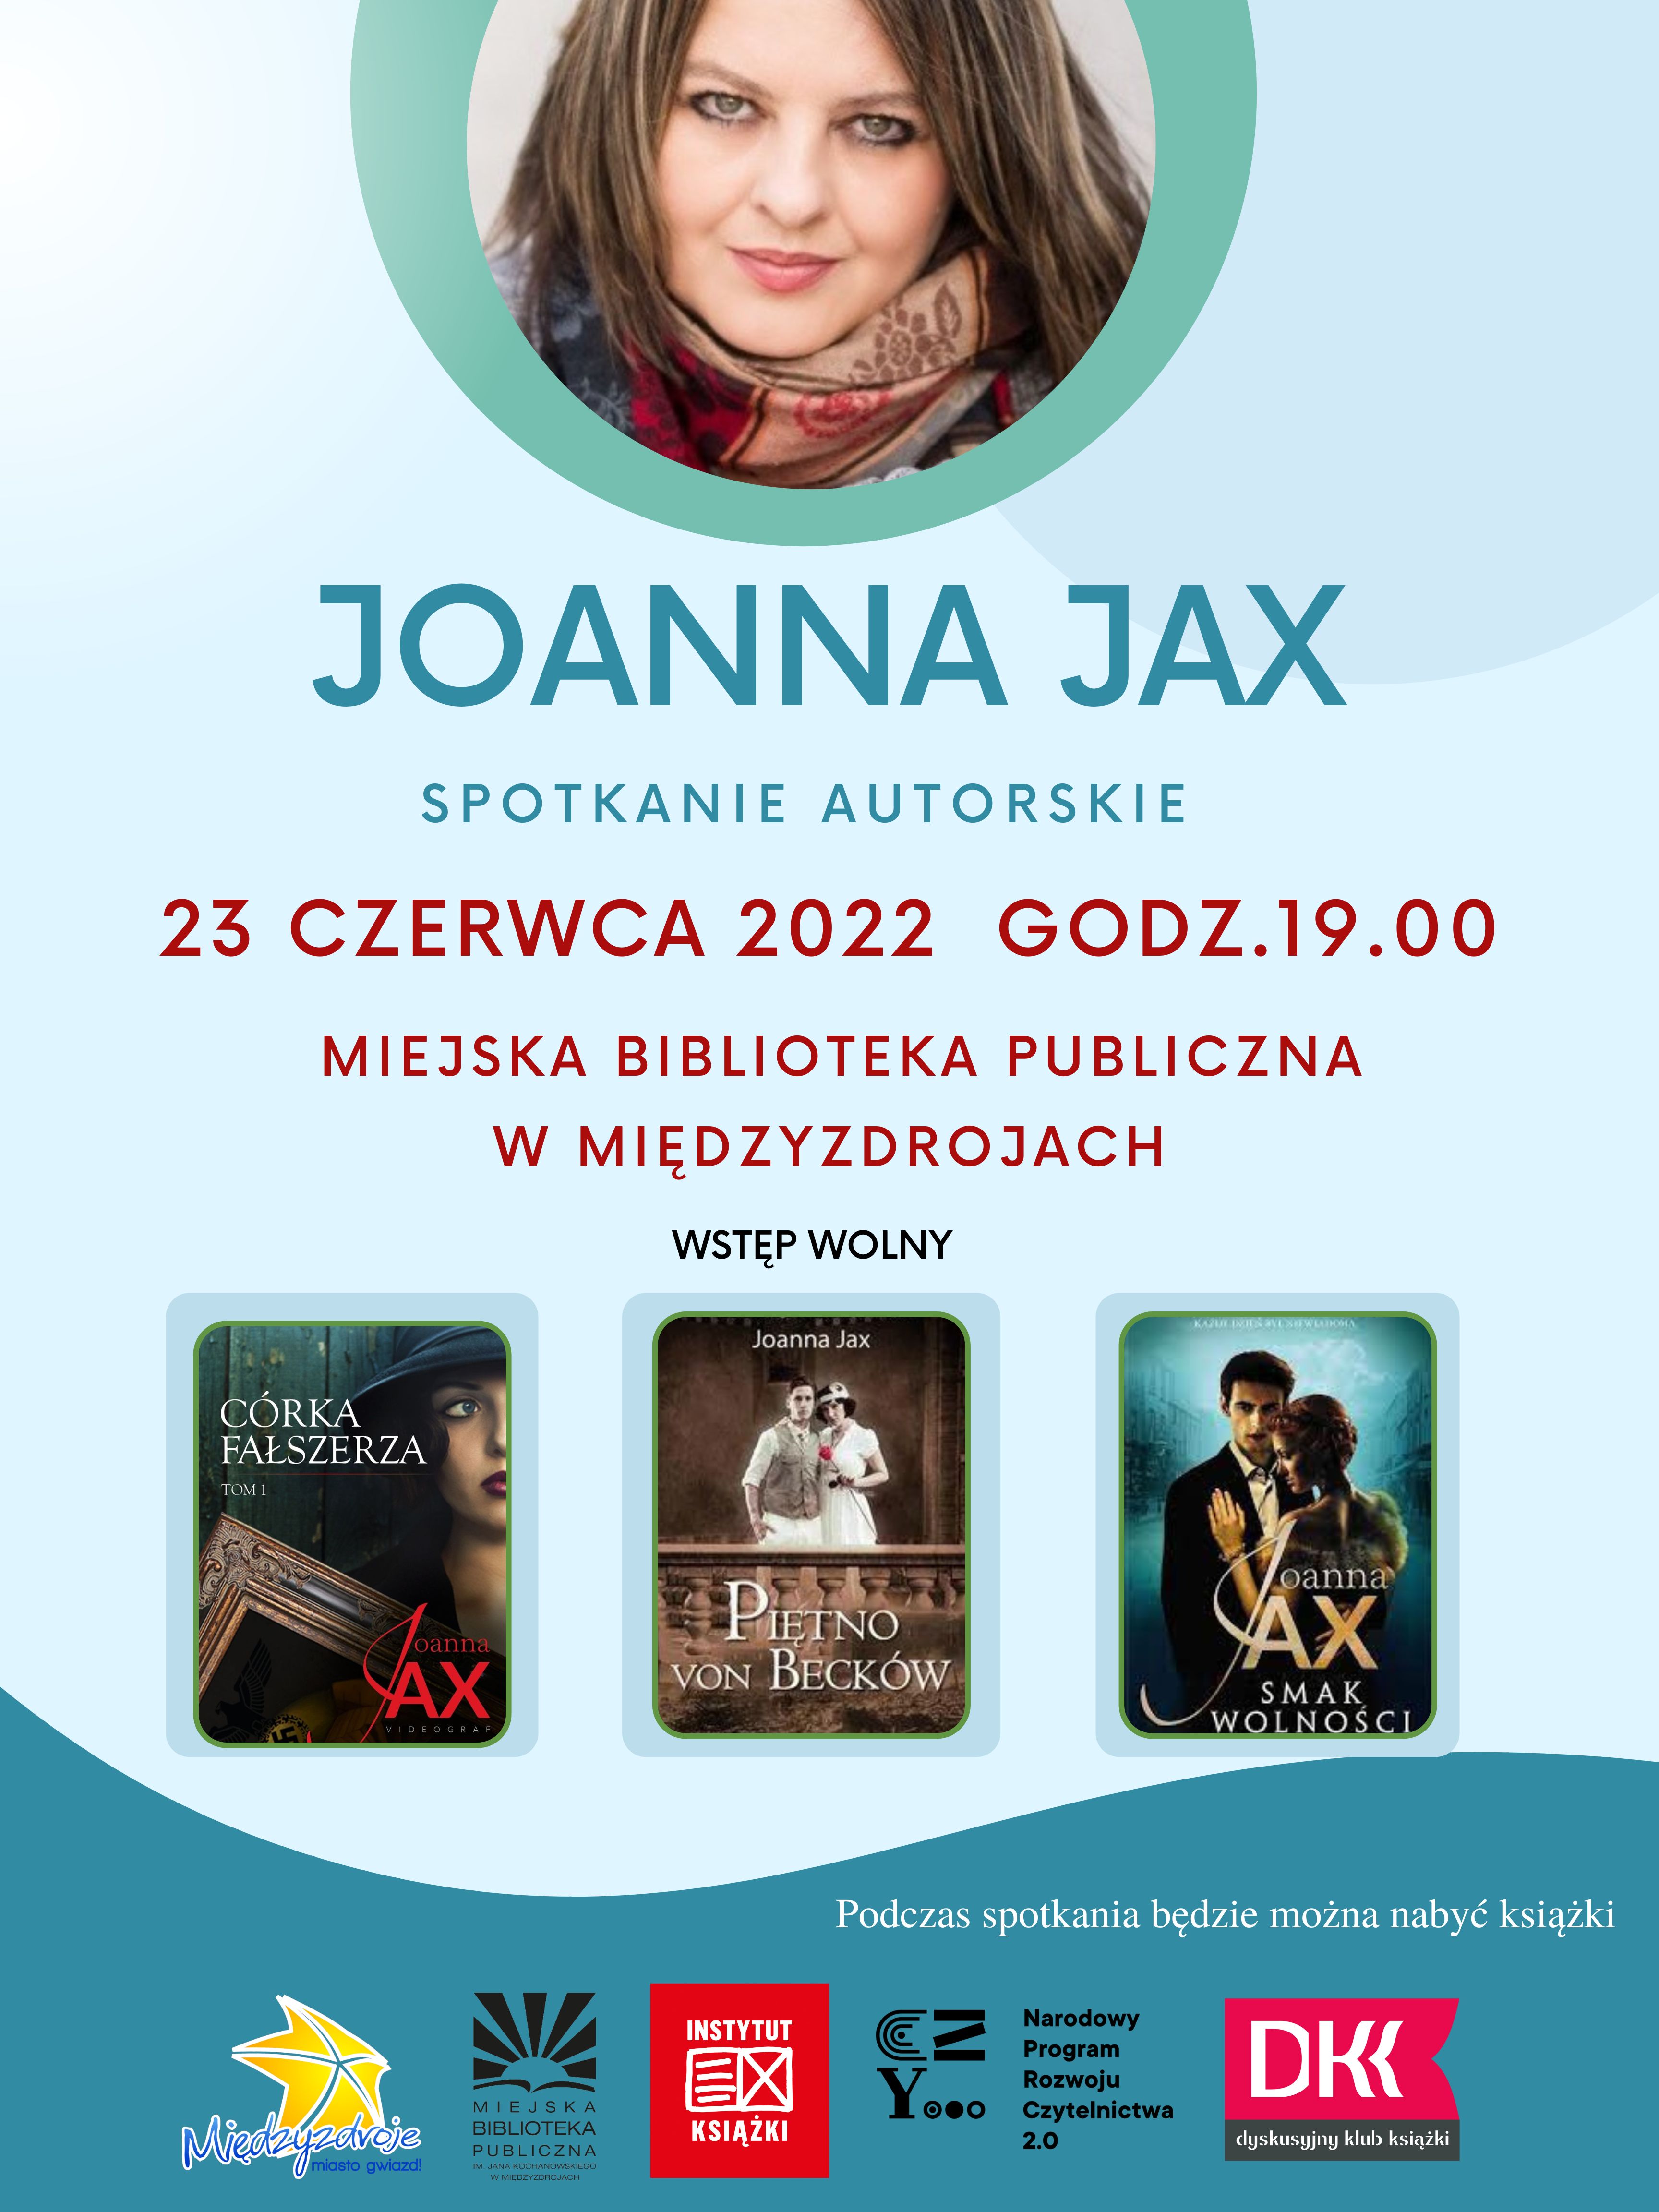 Joanna Jax w międzyzdrojskiej bibliotece 23 czerwca 2022 r. - zapowiedź